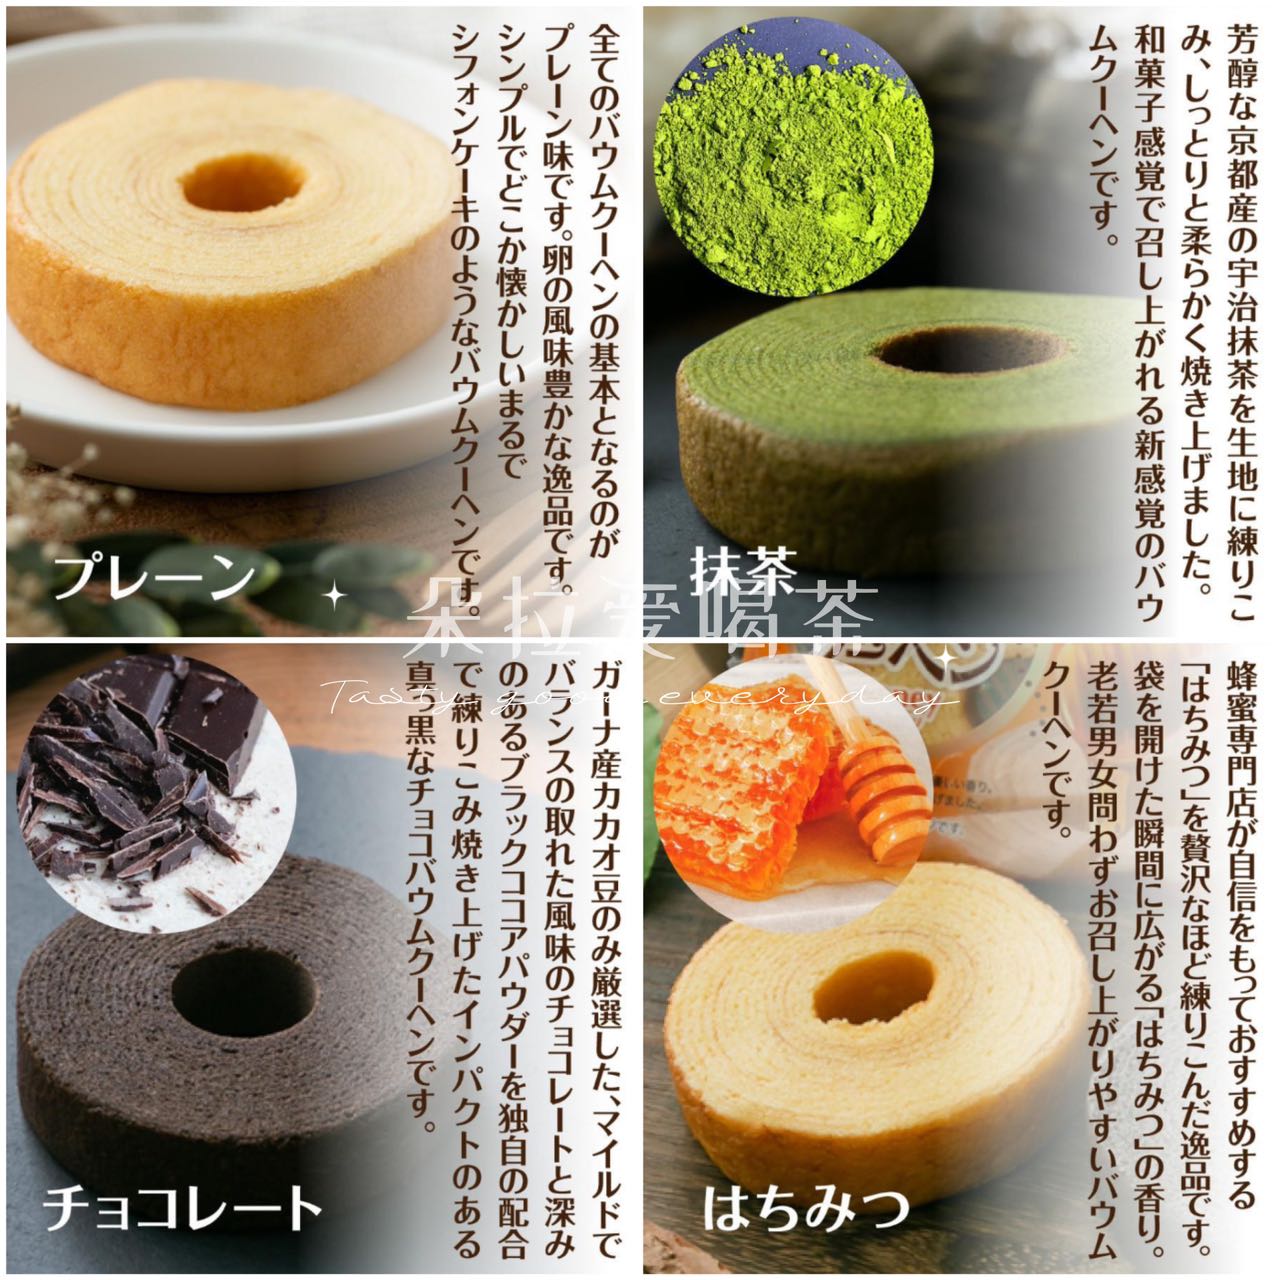 5个 包邮 湿润柔滑香醇抹茶巧克力蜂蜜蛋糕50g 日本进口FDI年轮蛋糕